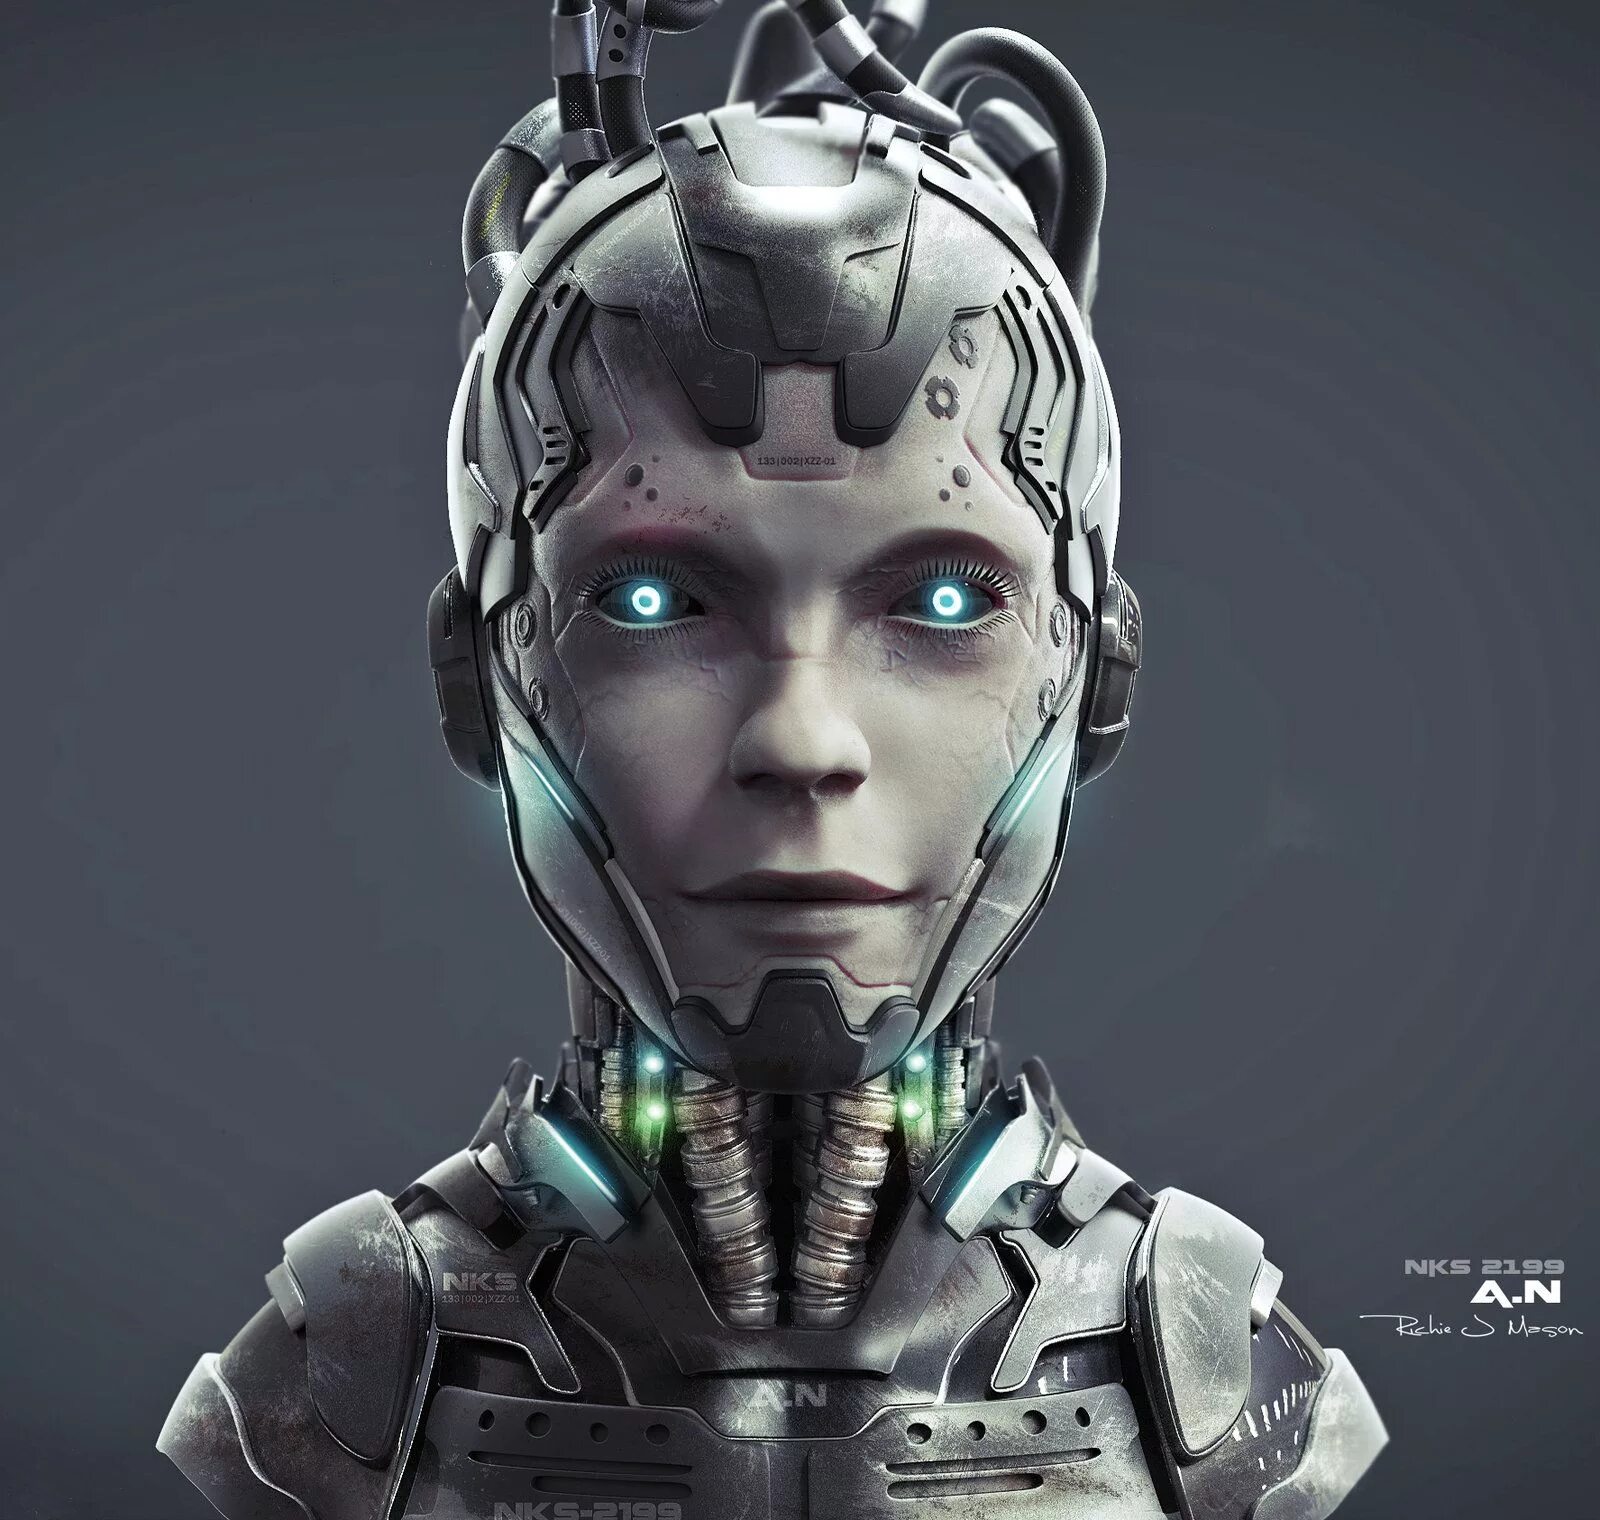 Future android. Cyberpunk киборги. Робот киберпанк. Cyberpunk Sci-Fi киборги. Cyberpunk киборг арт.